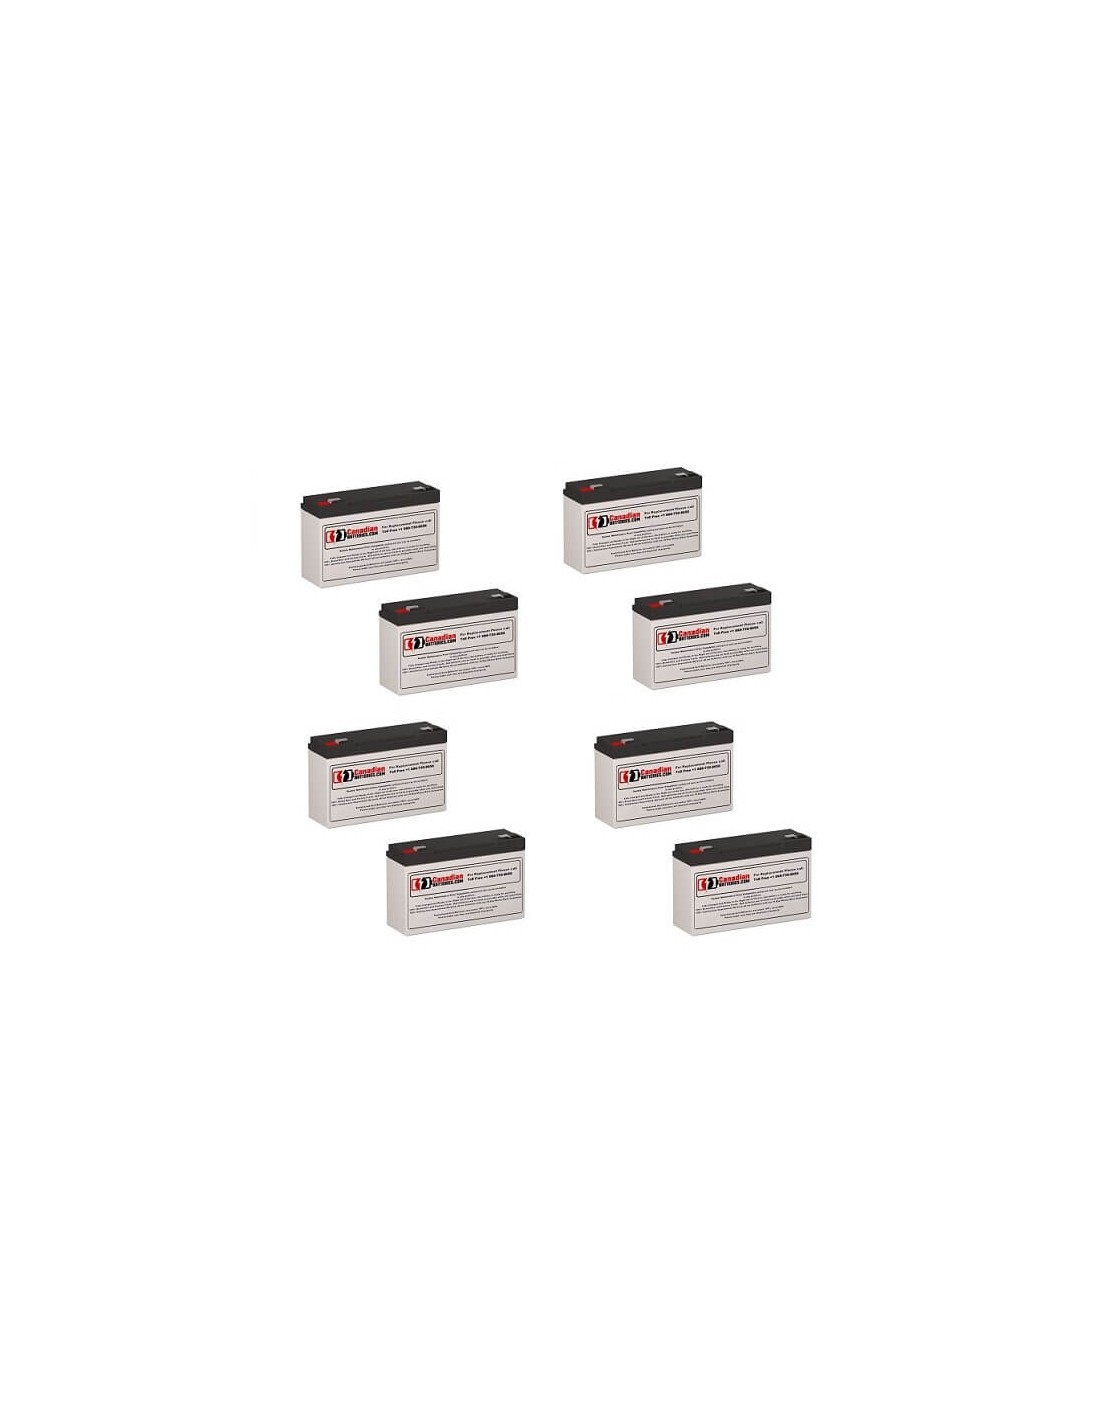 Batteries for Safe 1200 UPS, 8 x 6V, 12Ah - 72Wh